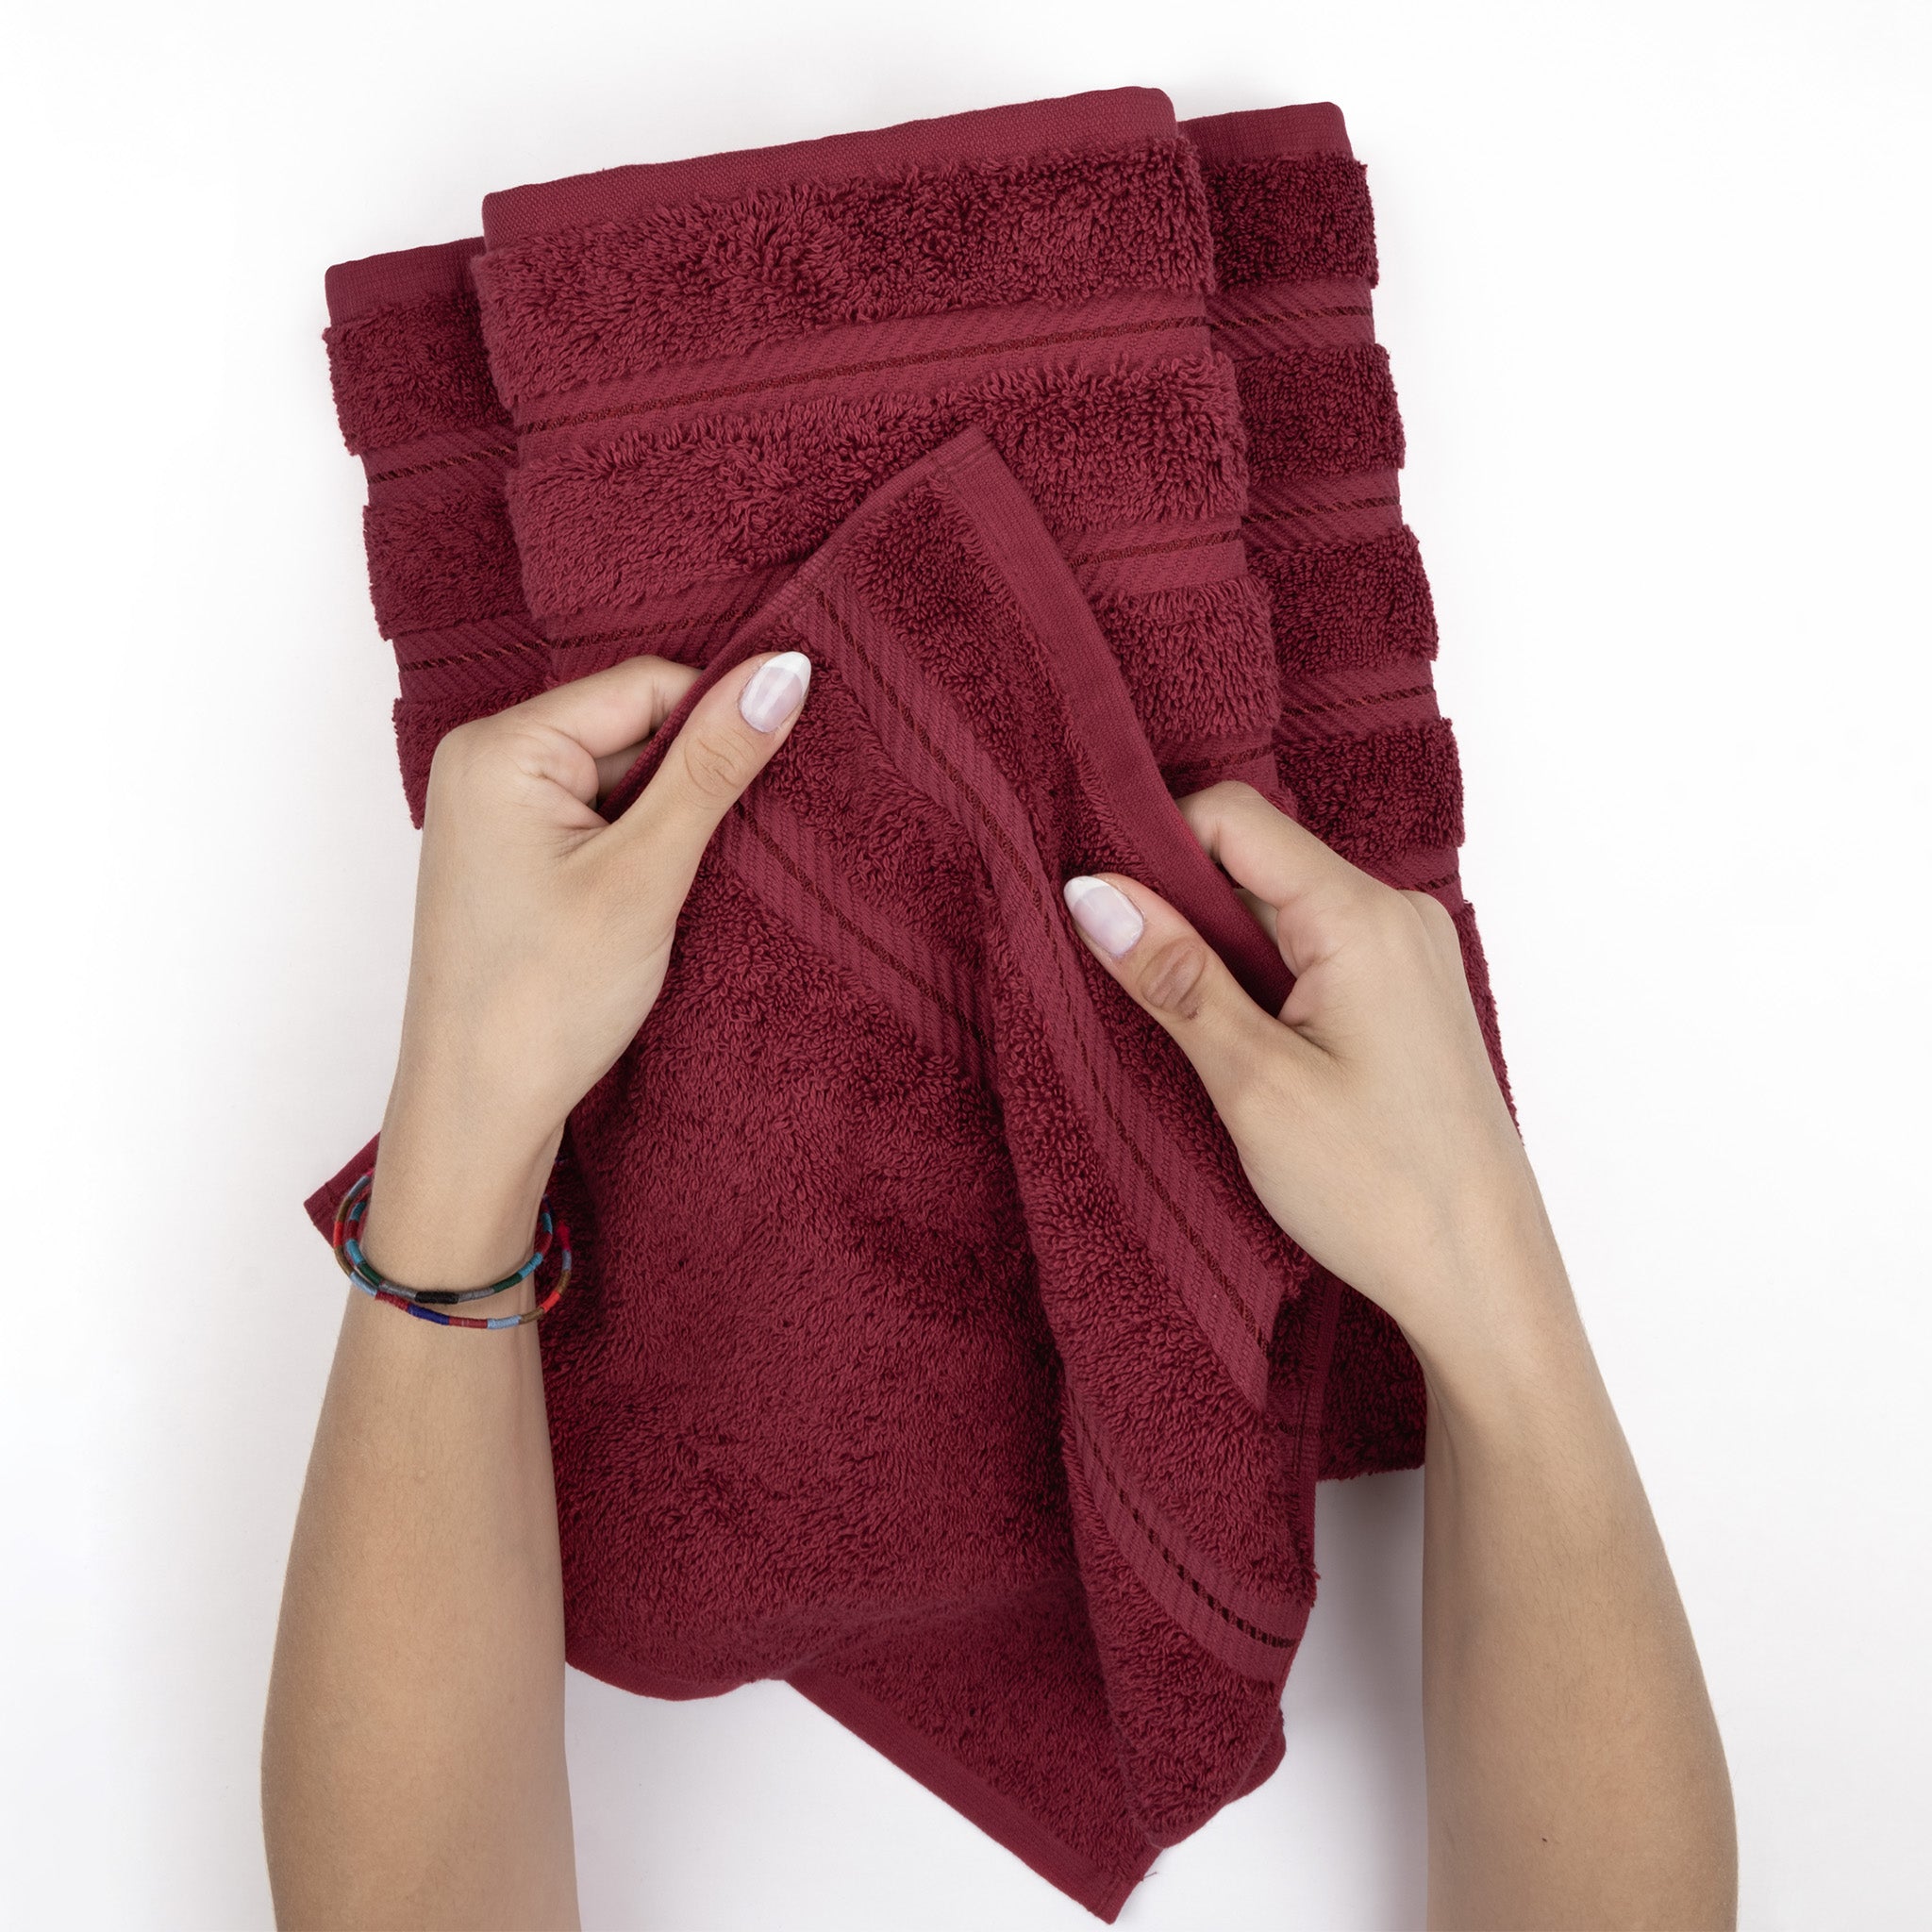 American Soft Linen 100% Turkish Cotton 4 Pack Bath Towel Set bordeaux-red-5